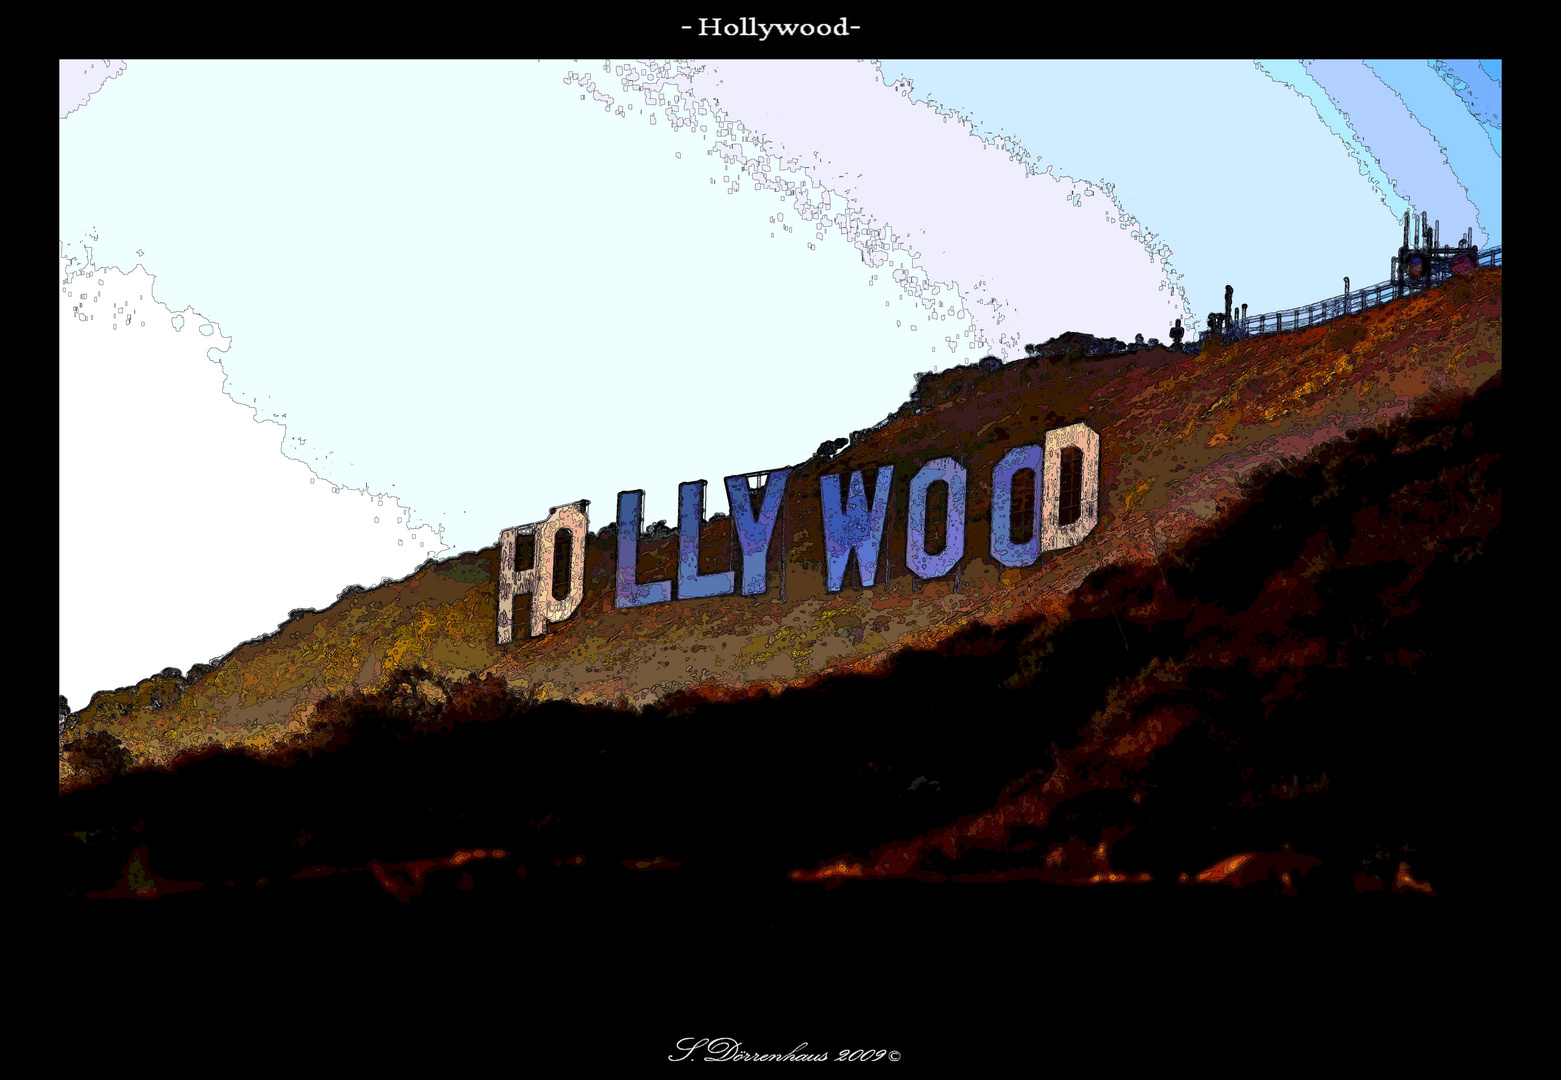 La Vida Hollywood